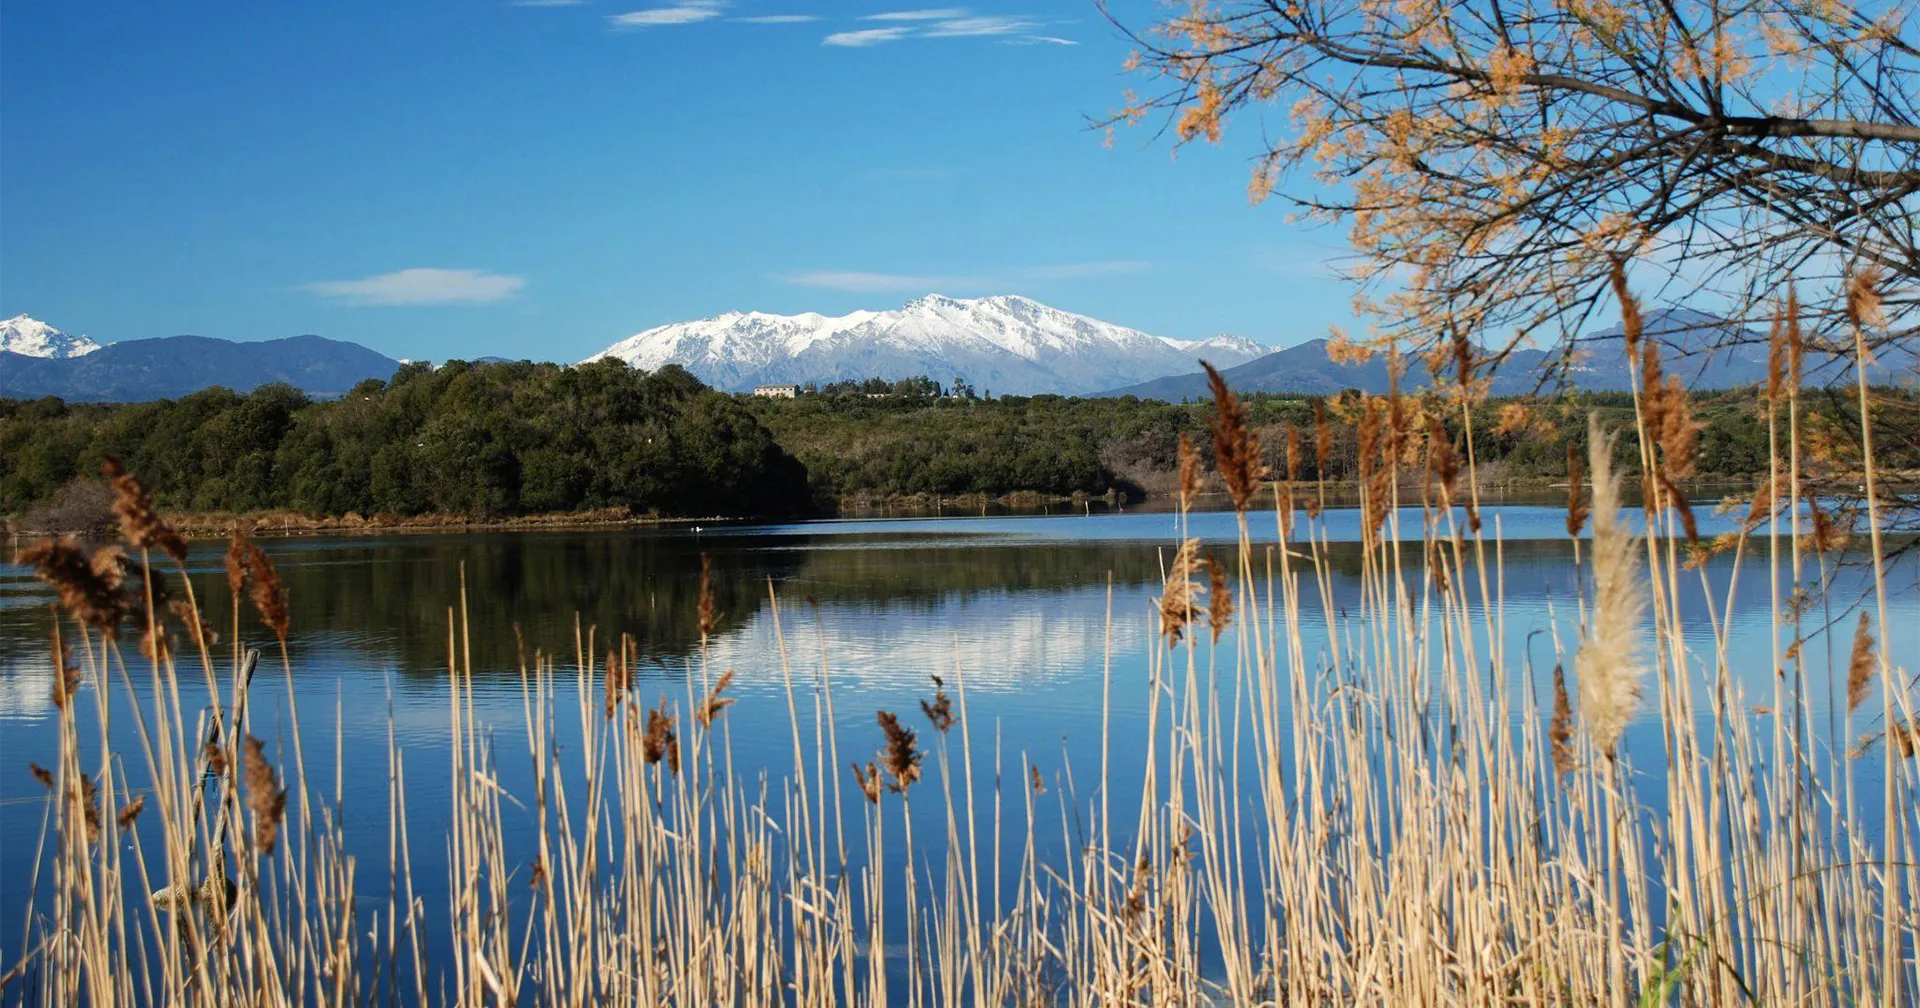 Dal Domaine de Riva, goditi splendide viste sulle montagne innevate in inverno.